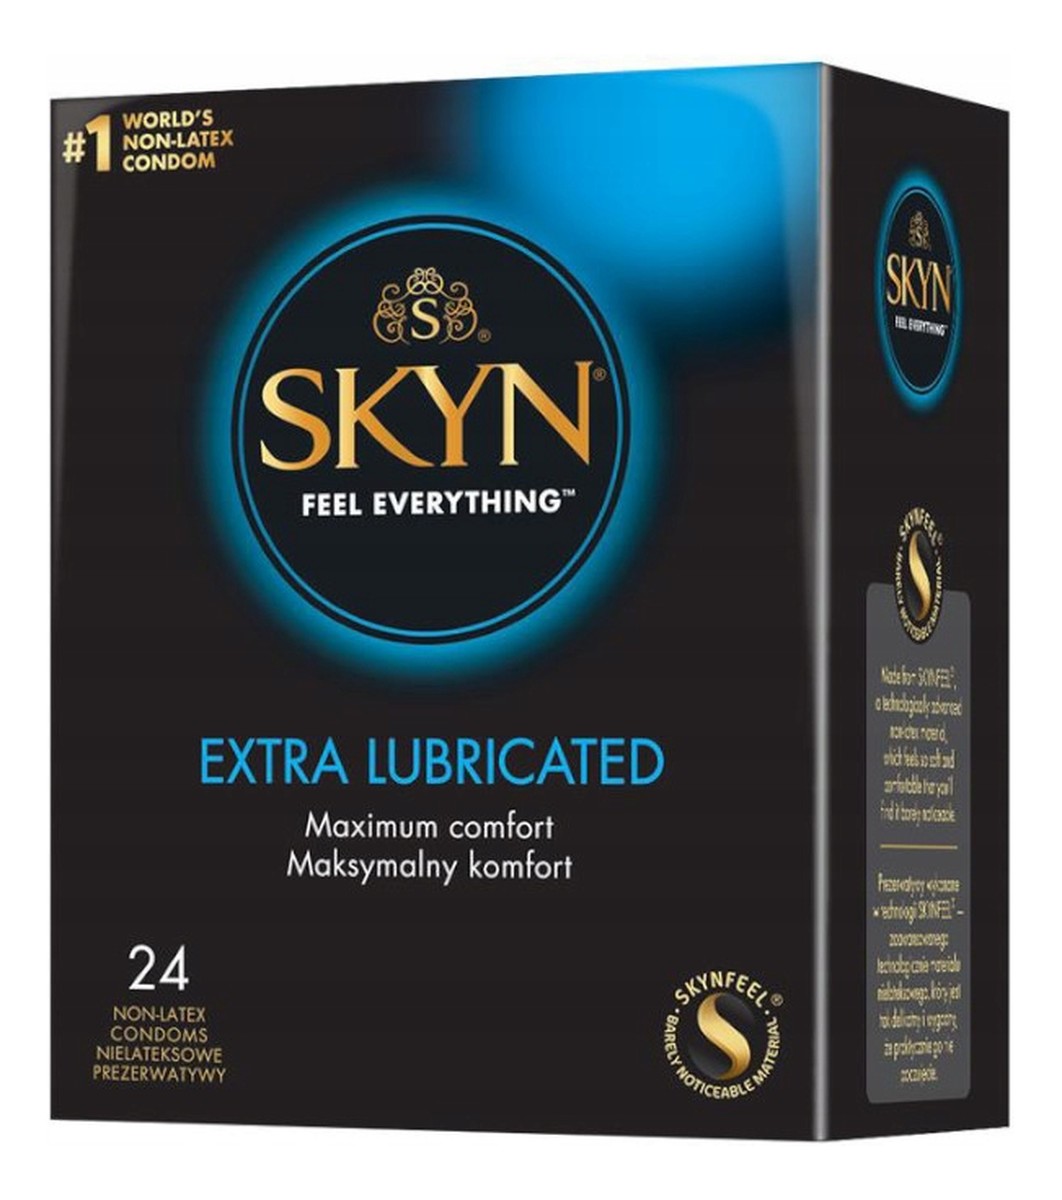 Skyn extra lubricated nielateksowe prezerwatywy 24szt